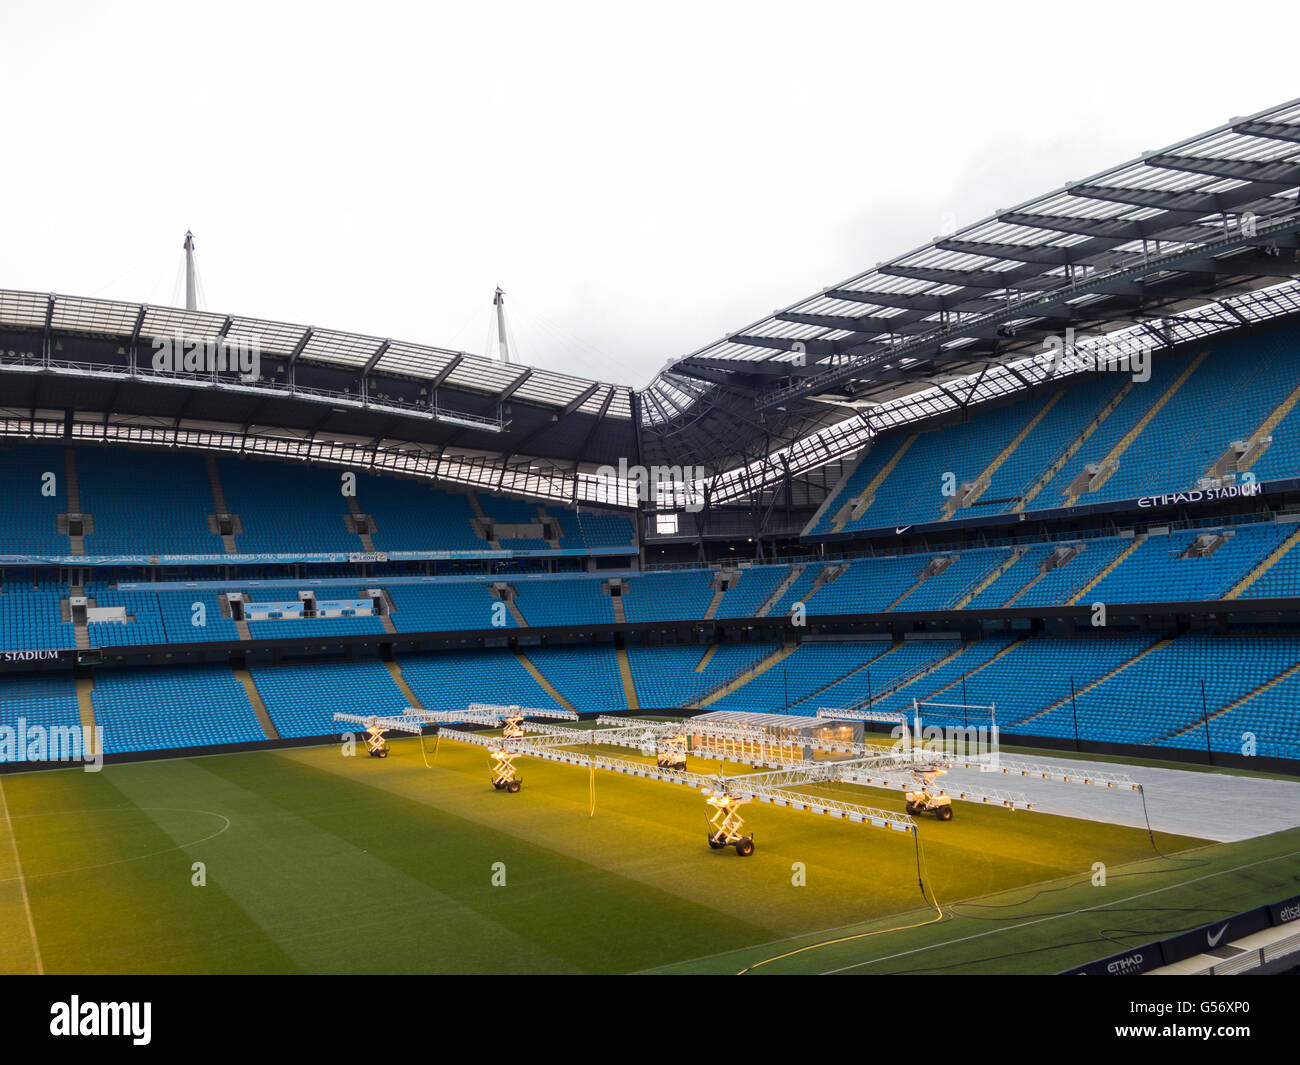 Torres de iluminación para proporcionar la luz artificial del sol en invierno para el pasto en el campo , el estadio Etihad Stadium de Manchester City UK Foto de stock